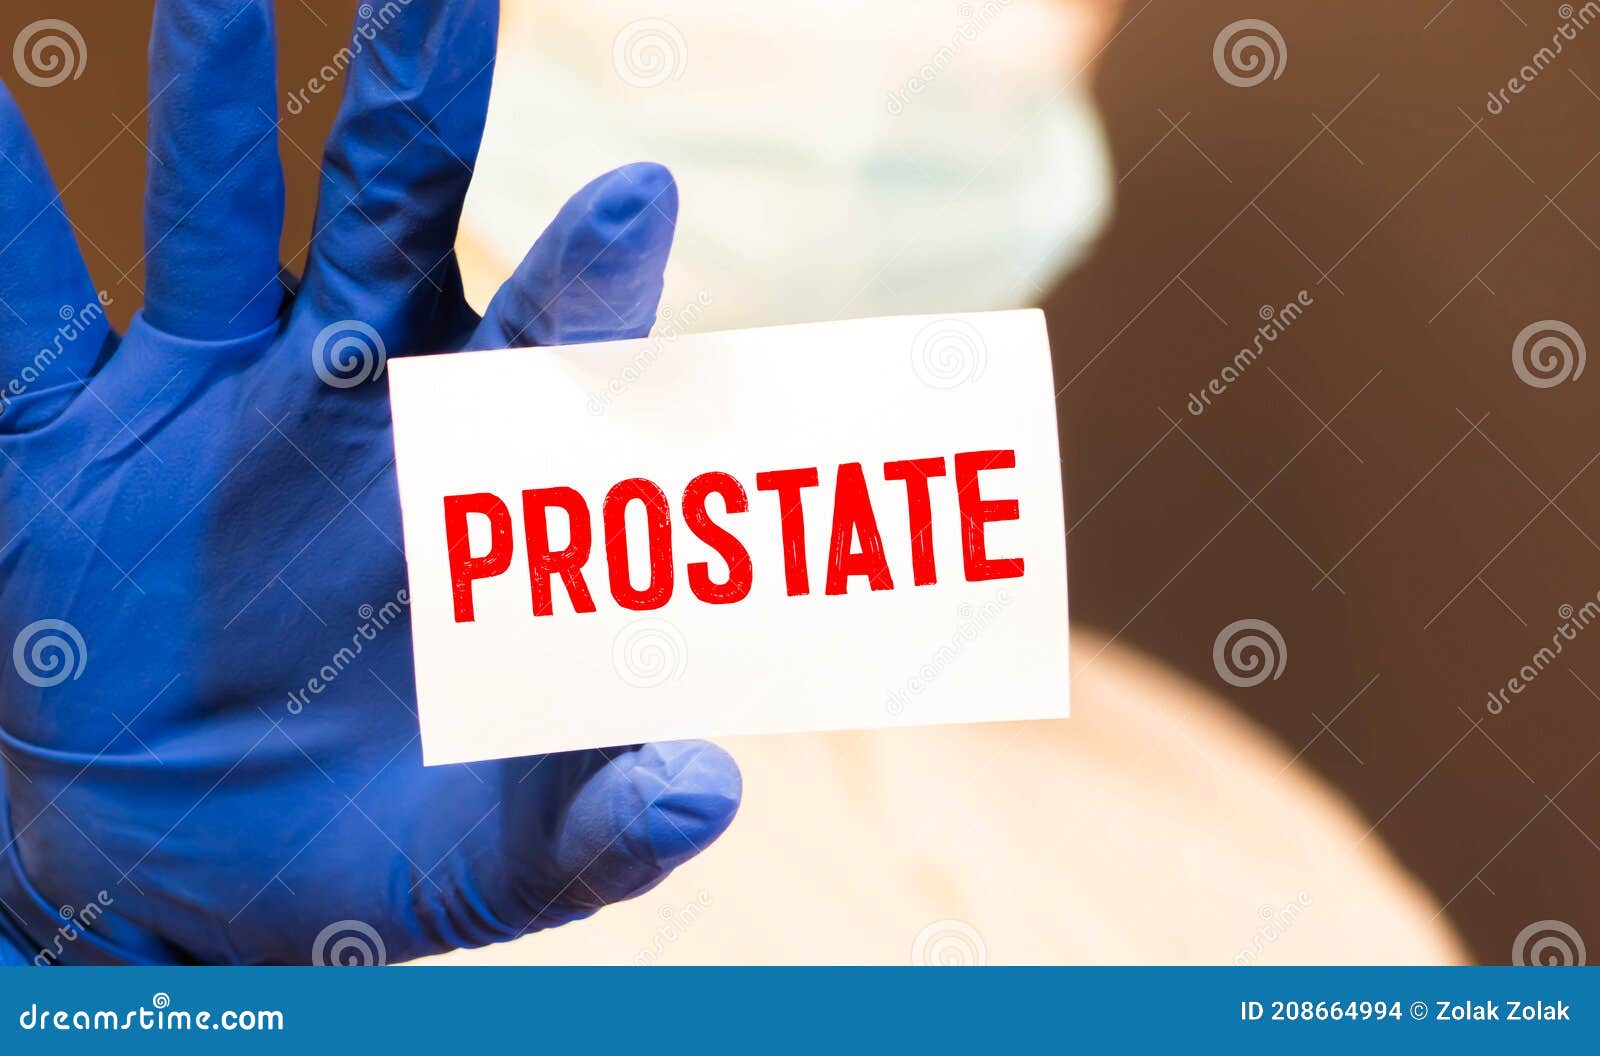 Krónikus prosztatitis a súlyosbodási szakaszban Prostatitis fibroids prosztata változások